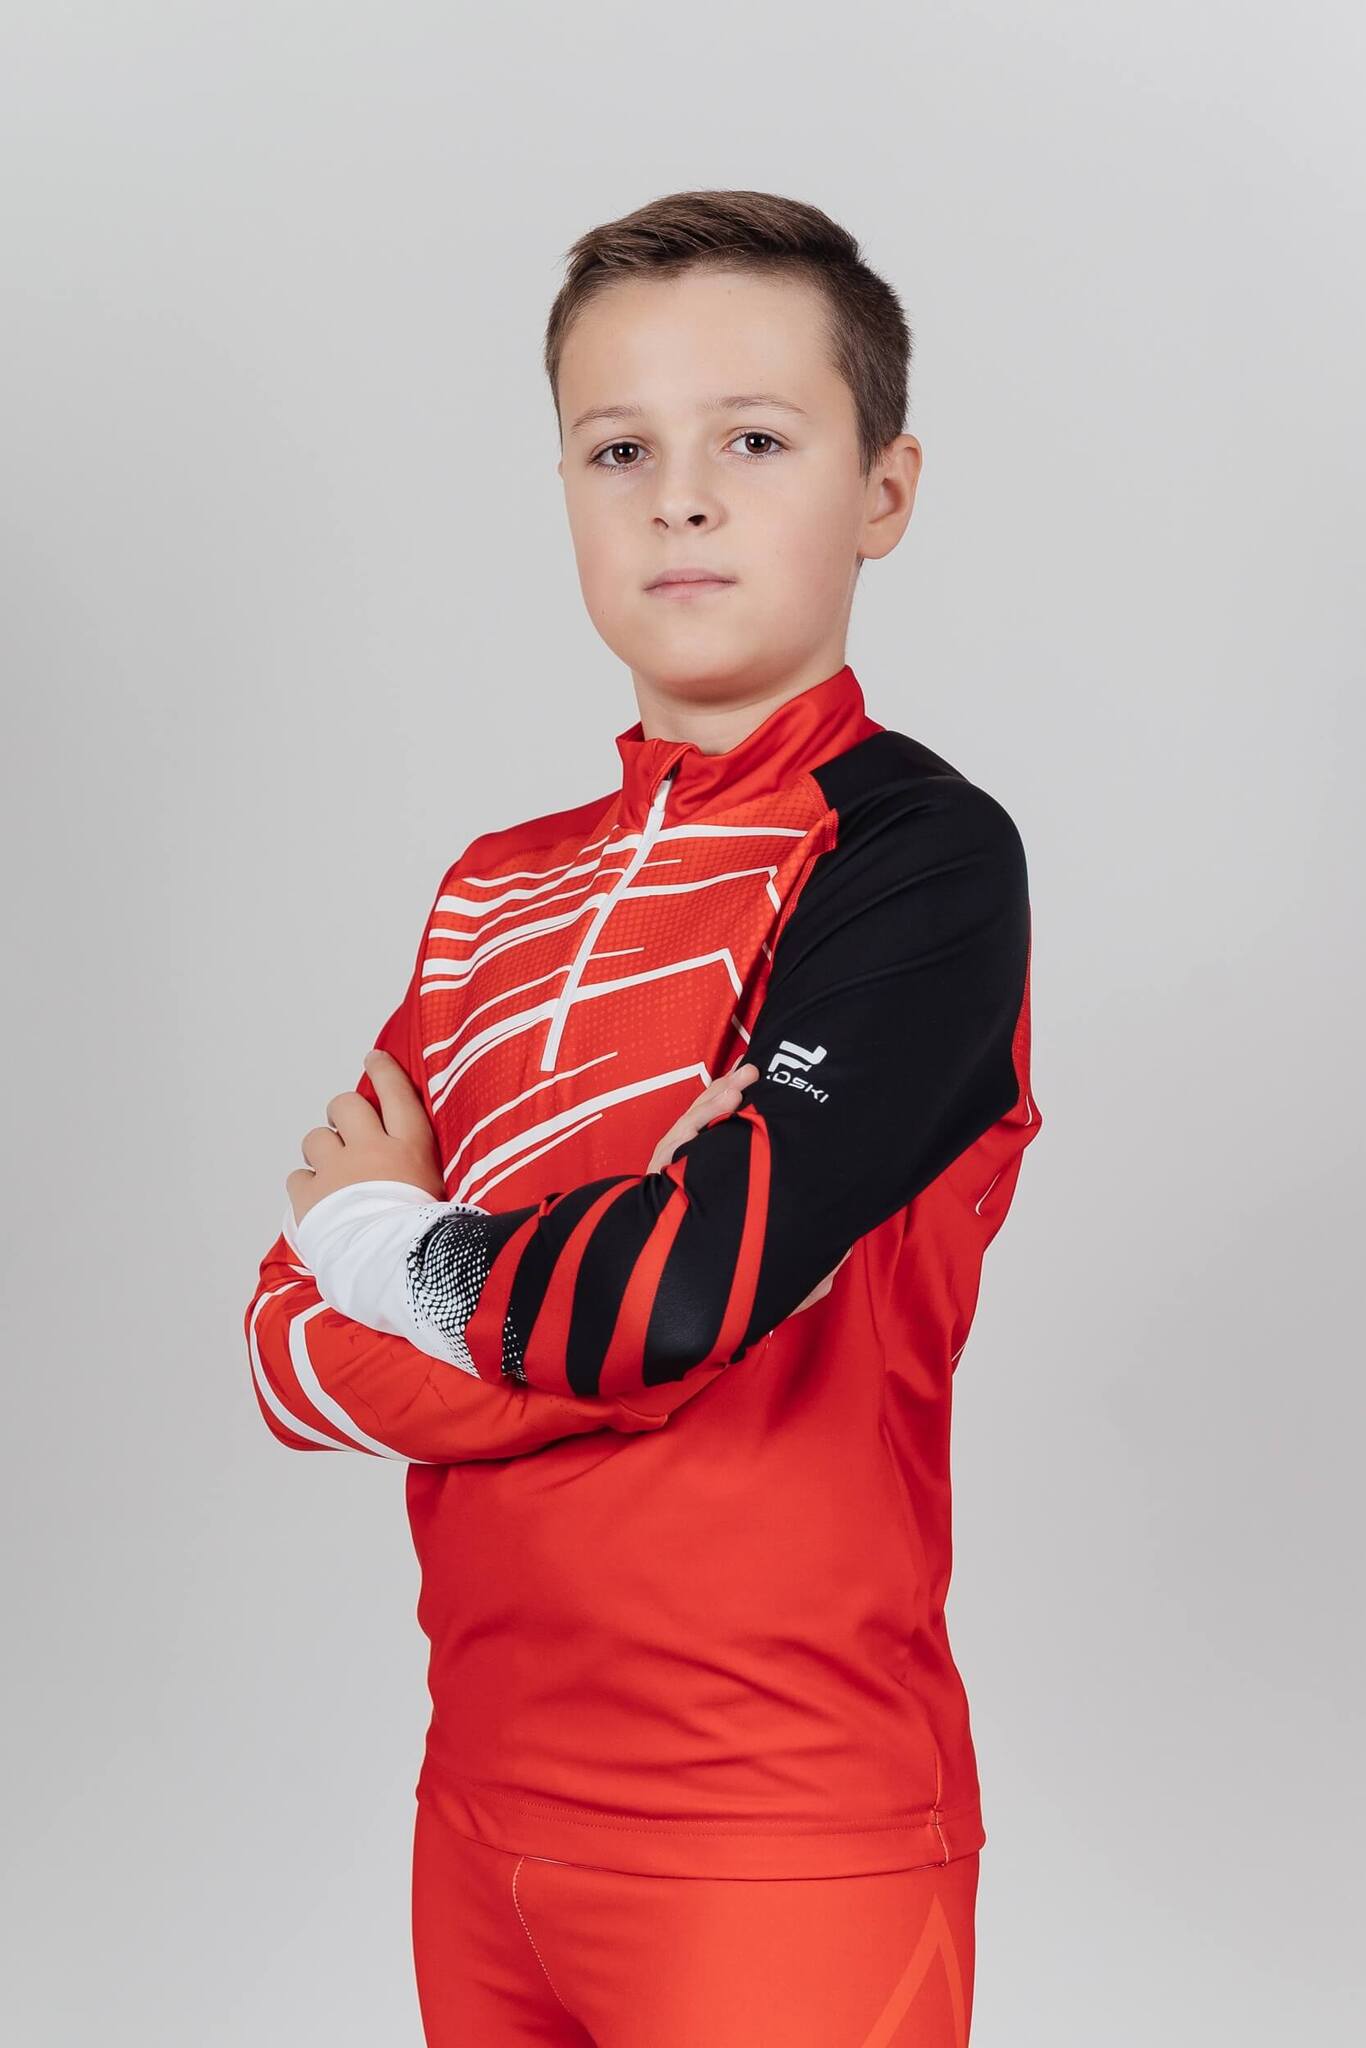 Детский и подростковый лыжный гоночный костюм Nordski Jr Pro red-black - 4